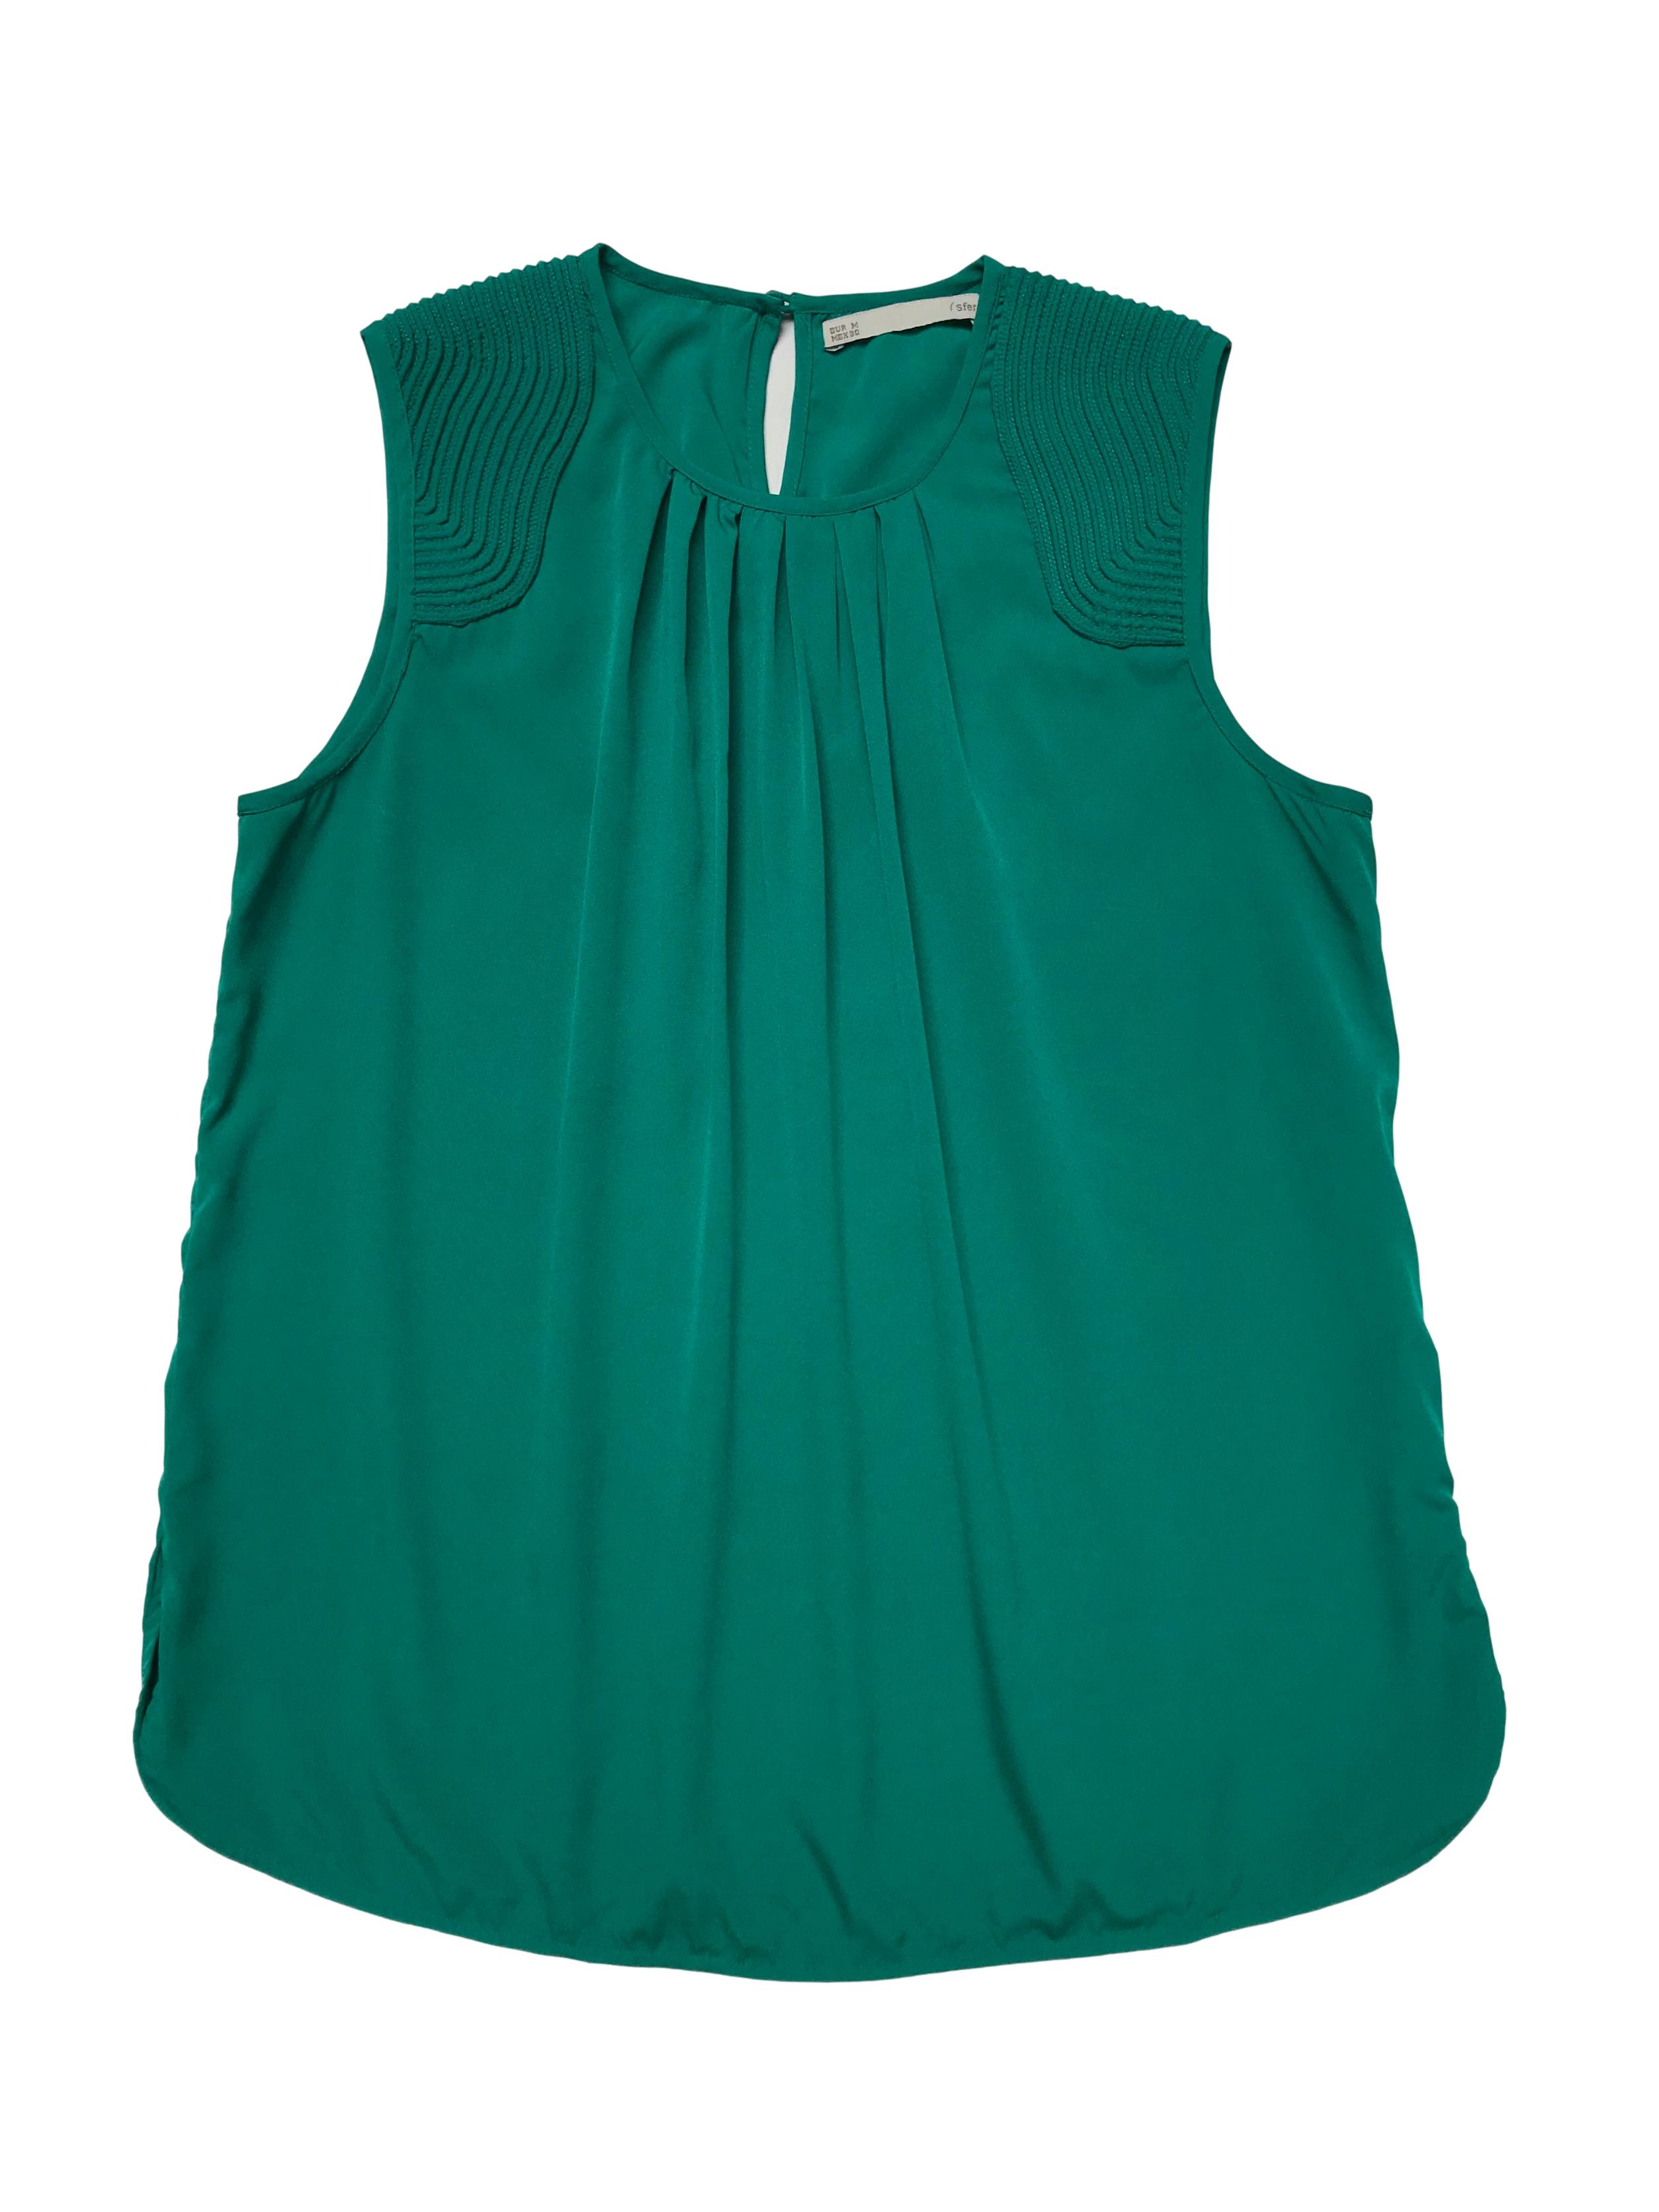 Blusa Sfera verde jade de tela plana con aplicaciones texturadas en los hombros, pliegues en el cuello y botón posterior en el cuello. Busto 100cm Largo 60cm